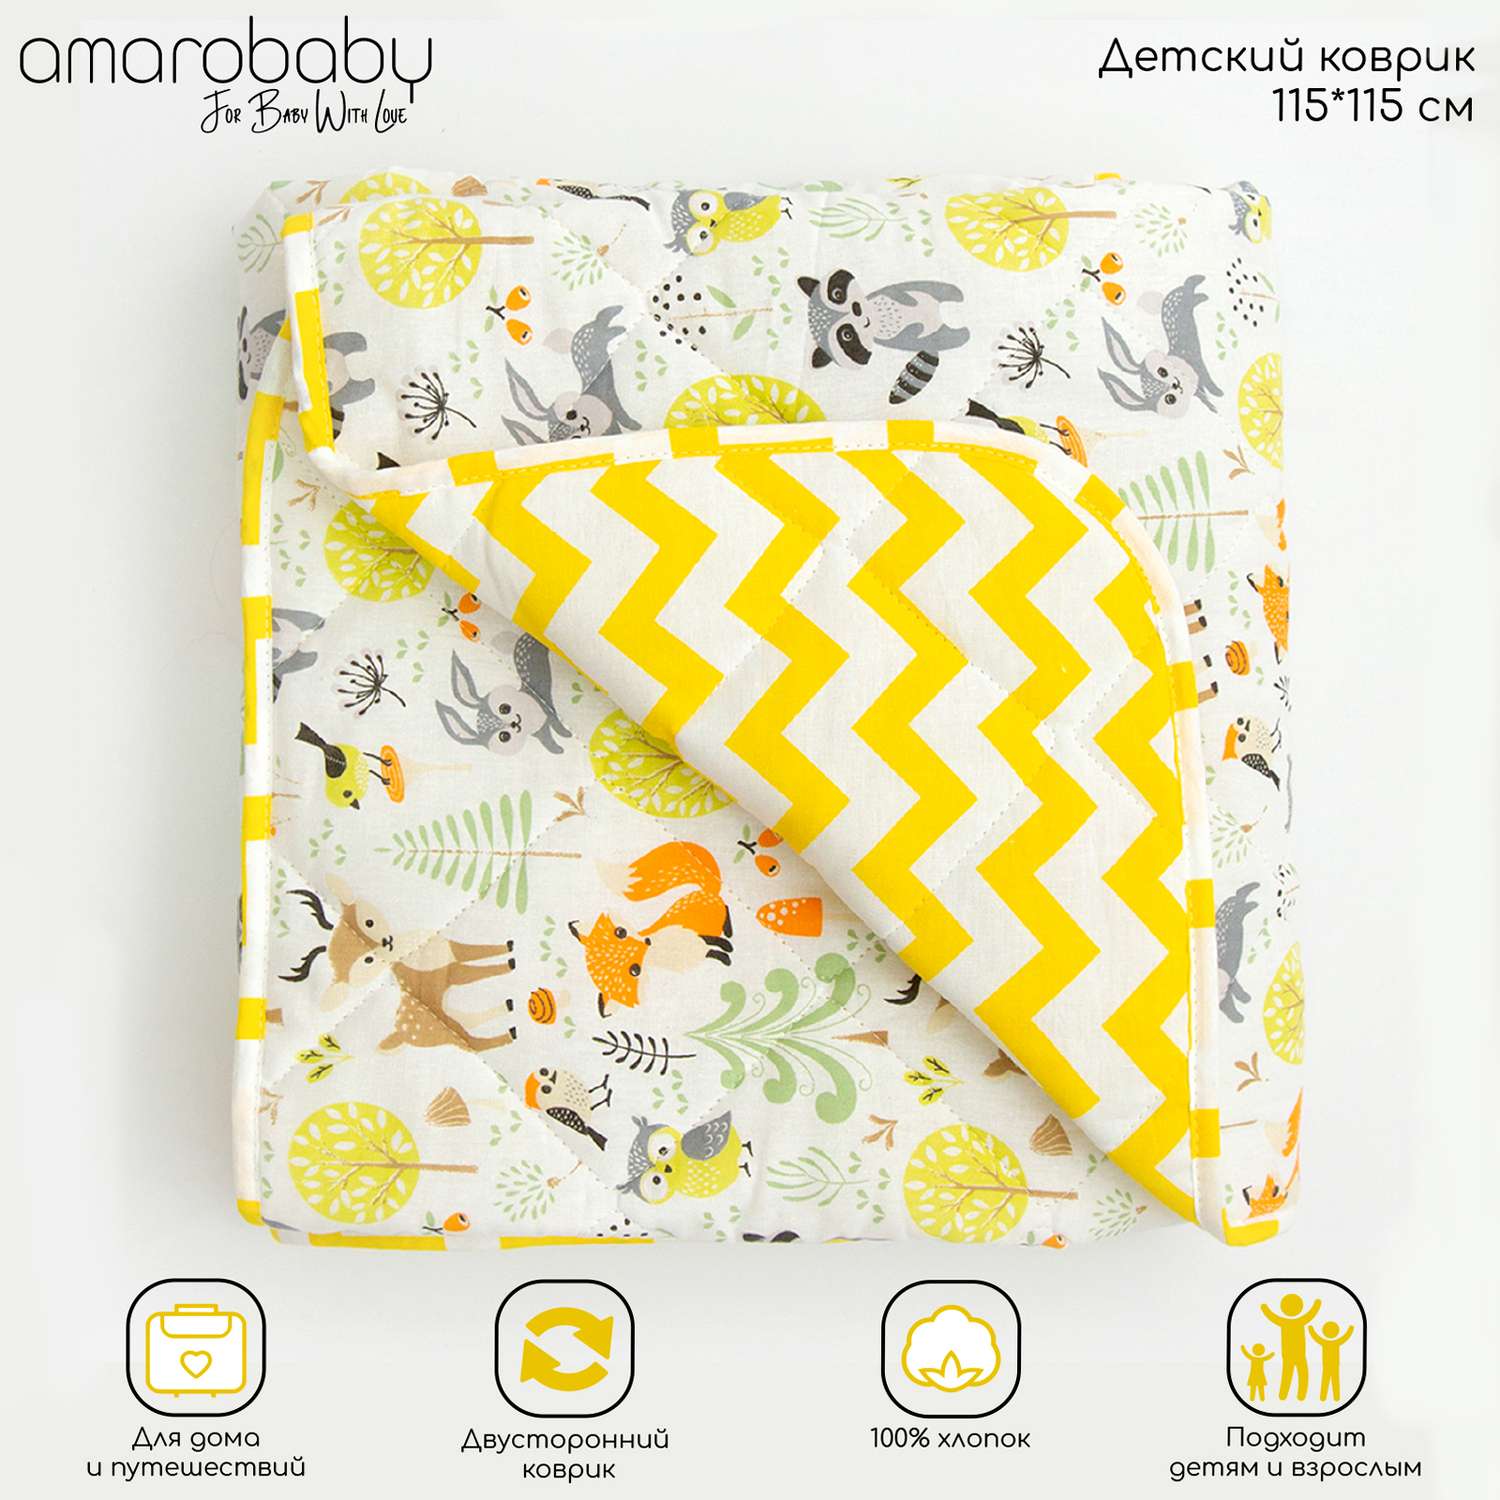 Коврик детский стёганный AmaroBaby Soft Mat 115х115 см Зверята жёлтый - фото 2